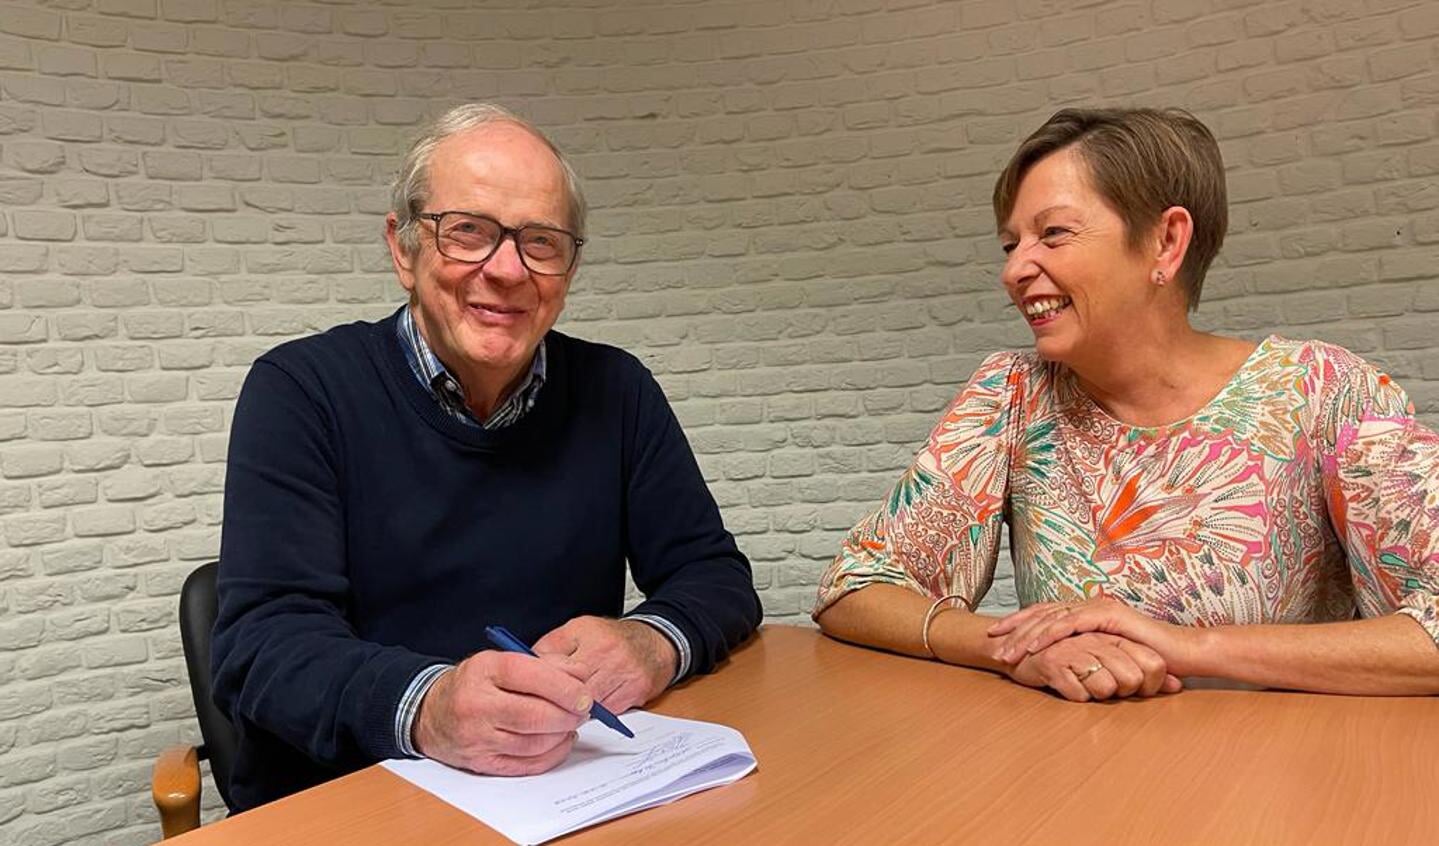 De voorzitter van Fietsmaatjes, Jan te Riele, en de voorzitter van het Jeroen Heitzman Accufonds, Angelique Bergers, ondertekenen de oprichtingsakte. 